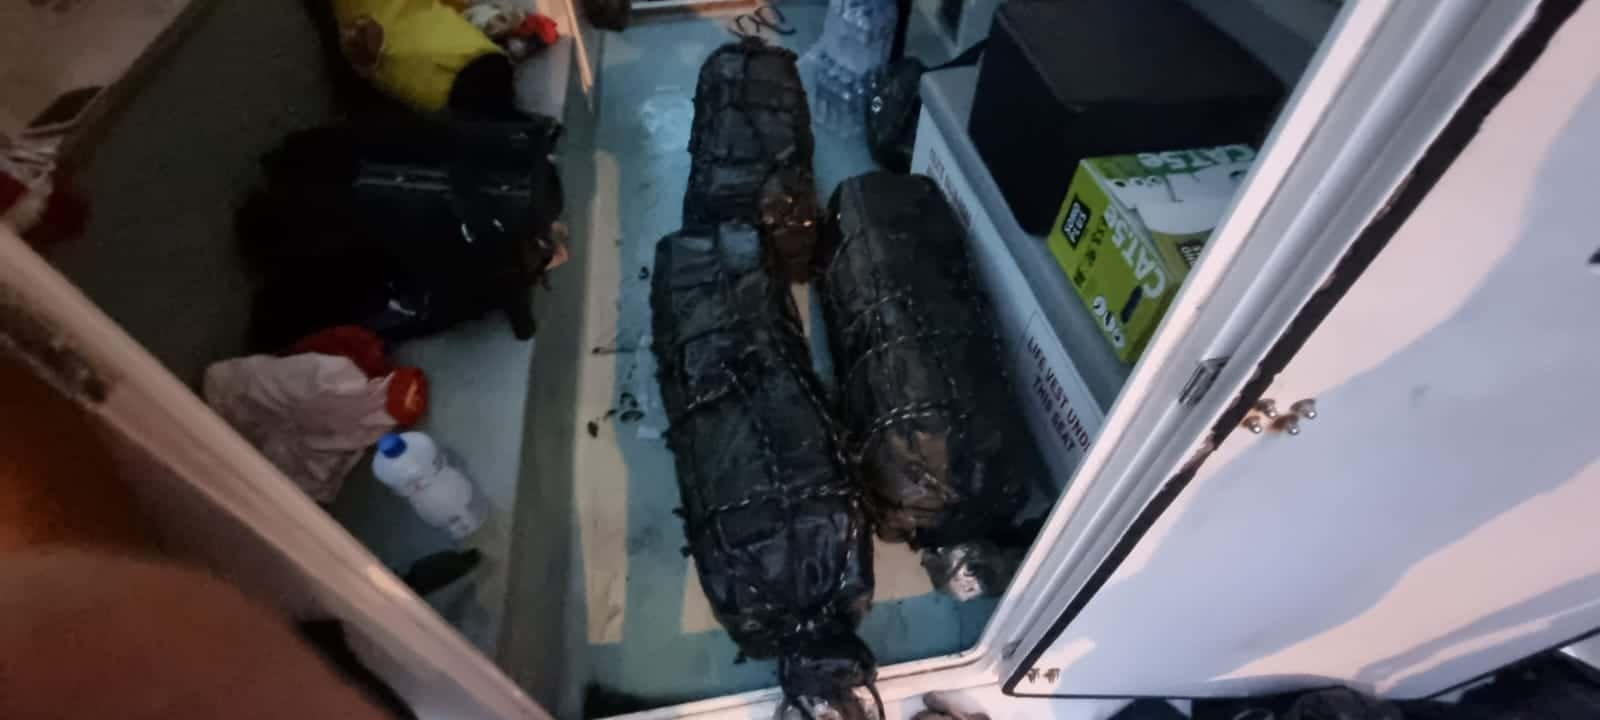 Sacos em cor escura retirados de dentro do compartimento do navio. Droga estava escondida dentro destas malas.